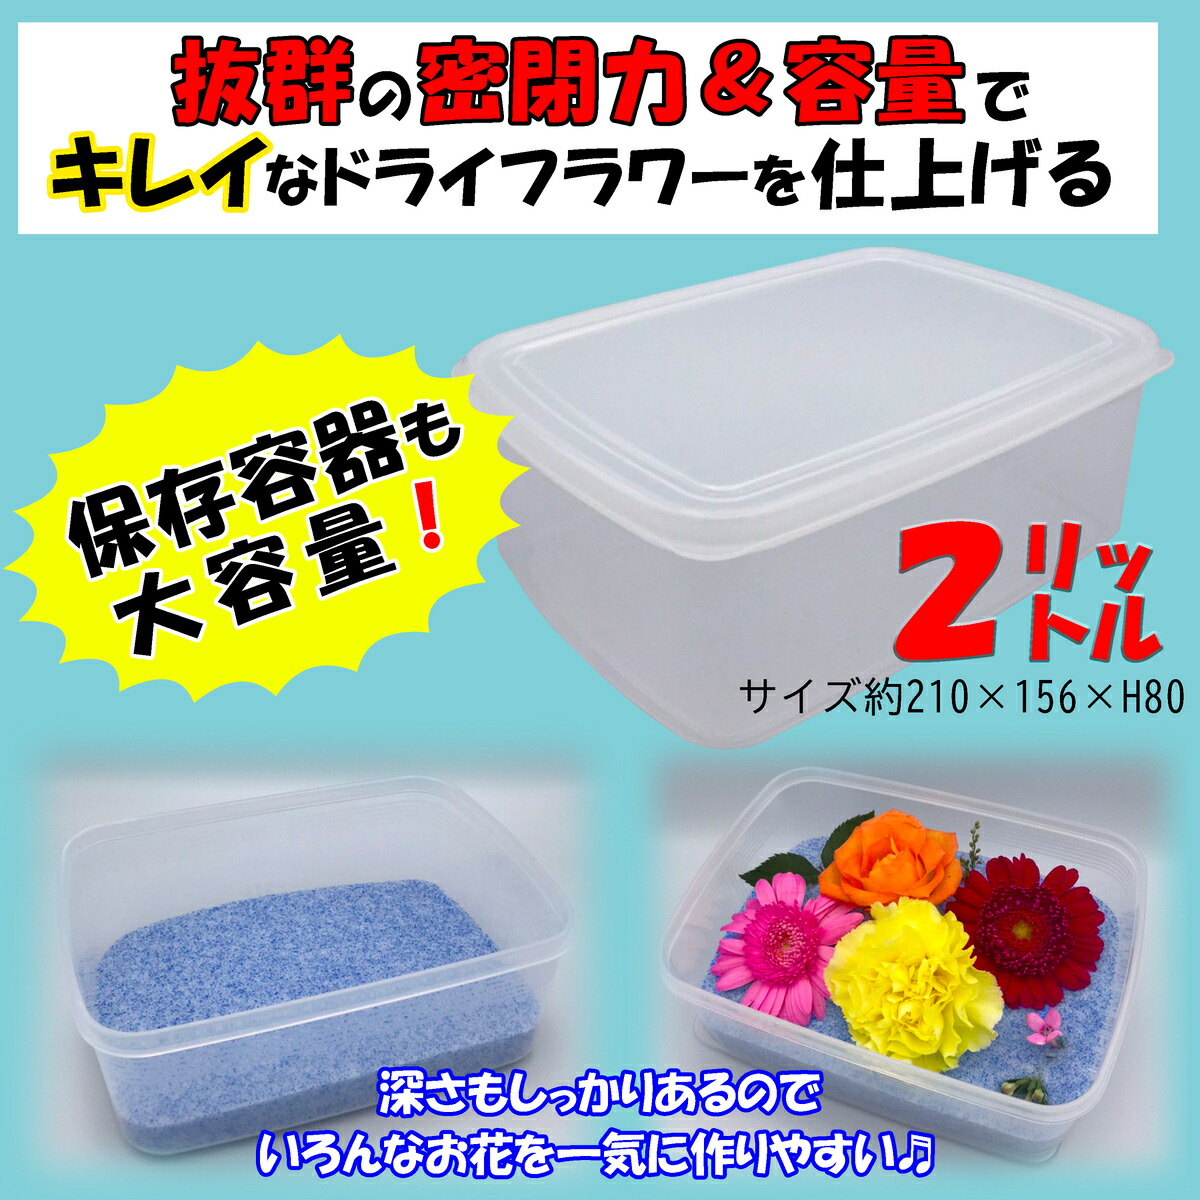 767円 【在庫一掃】 豊田化工 シリカゲル ドライフラワー用 乾燥剤 1kg